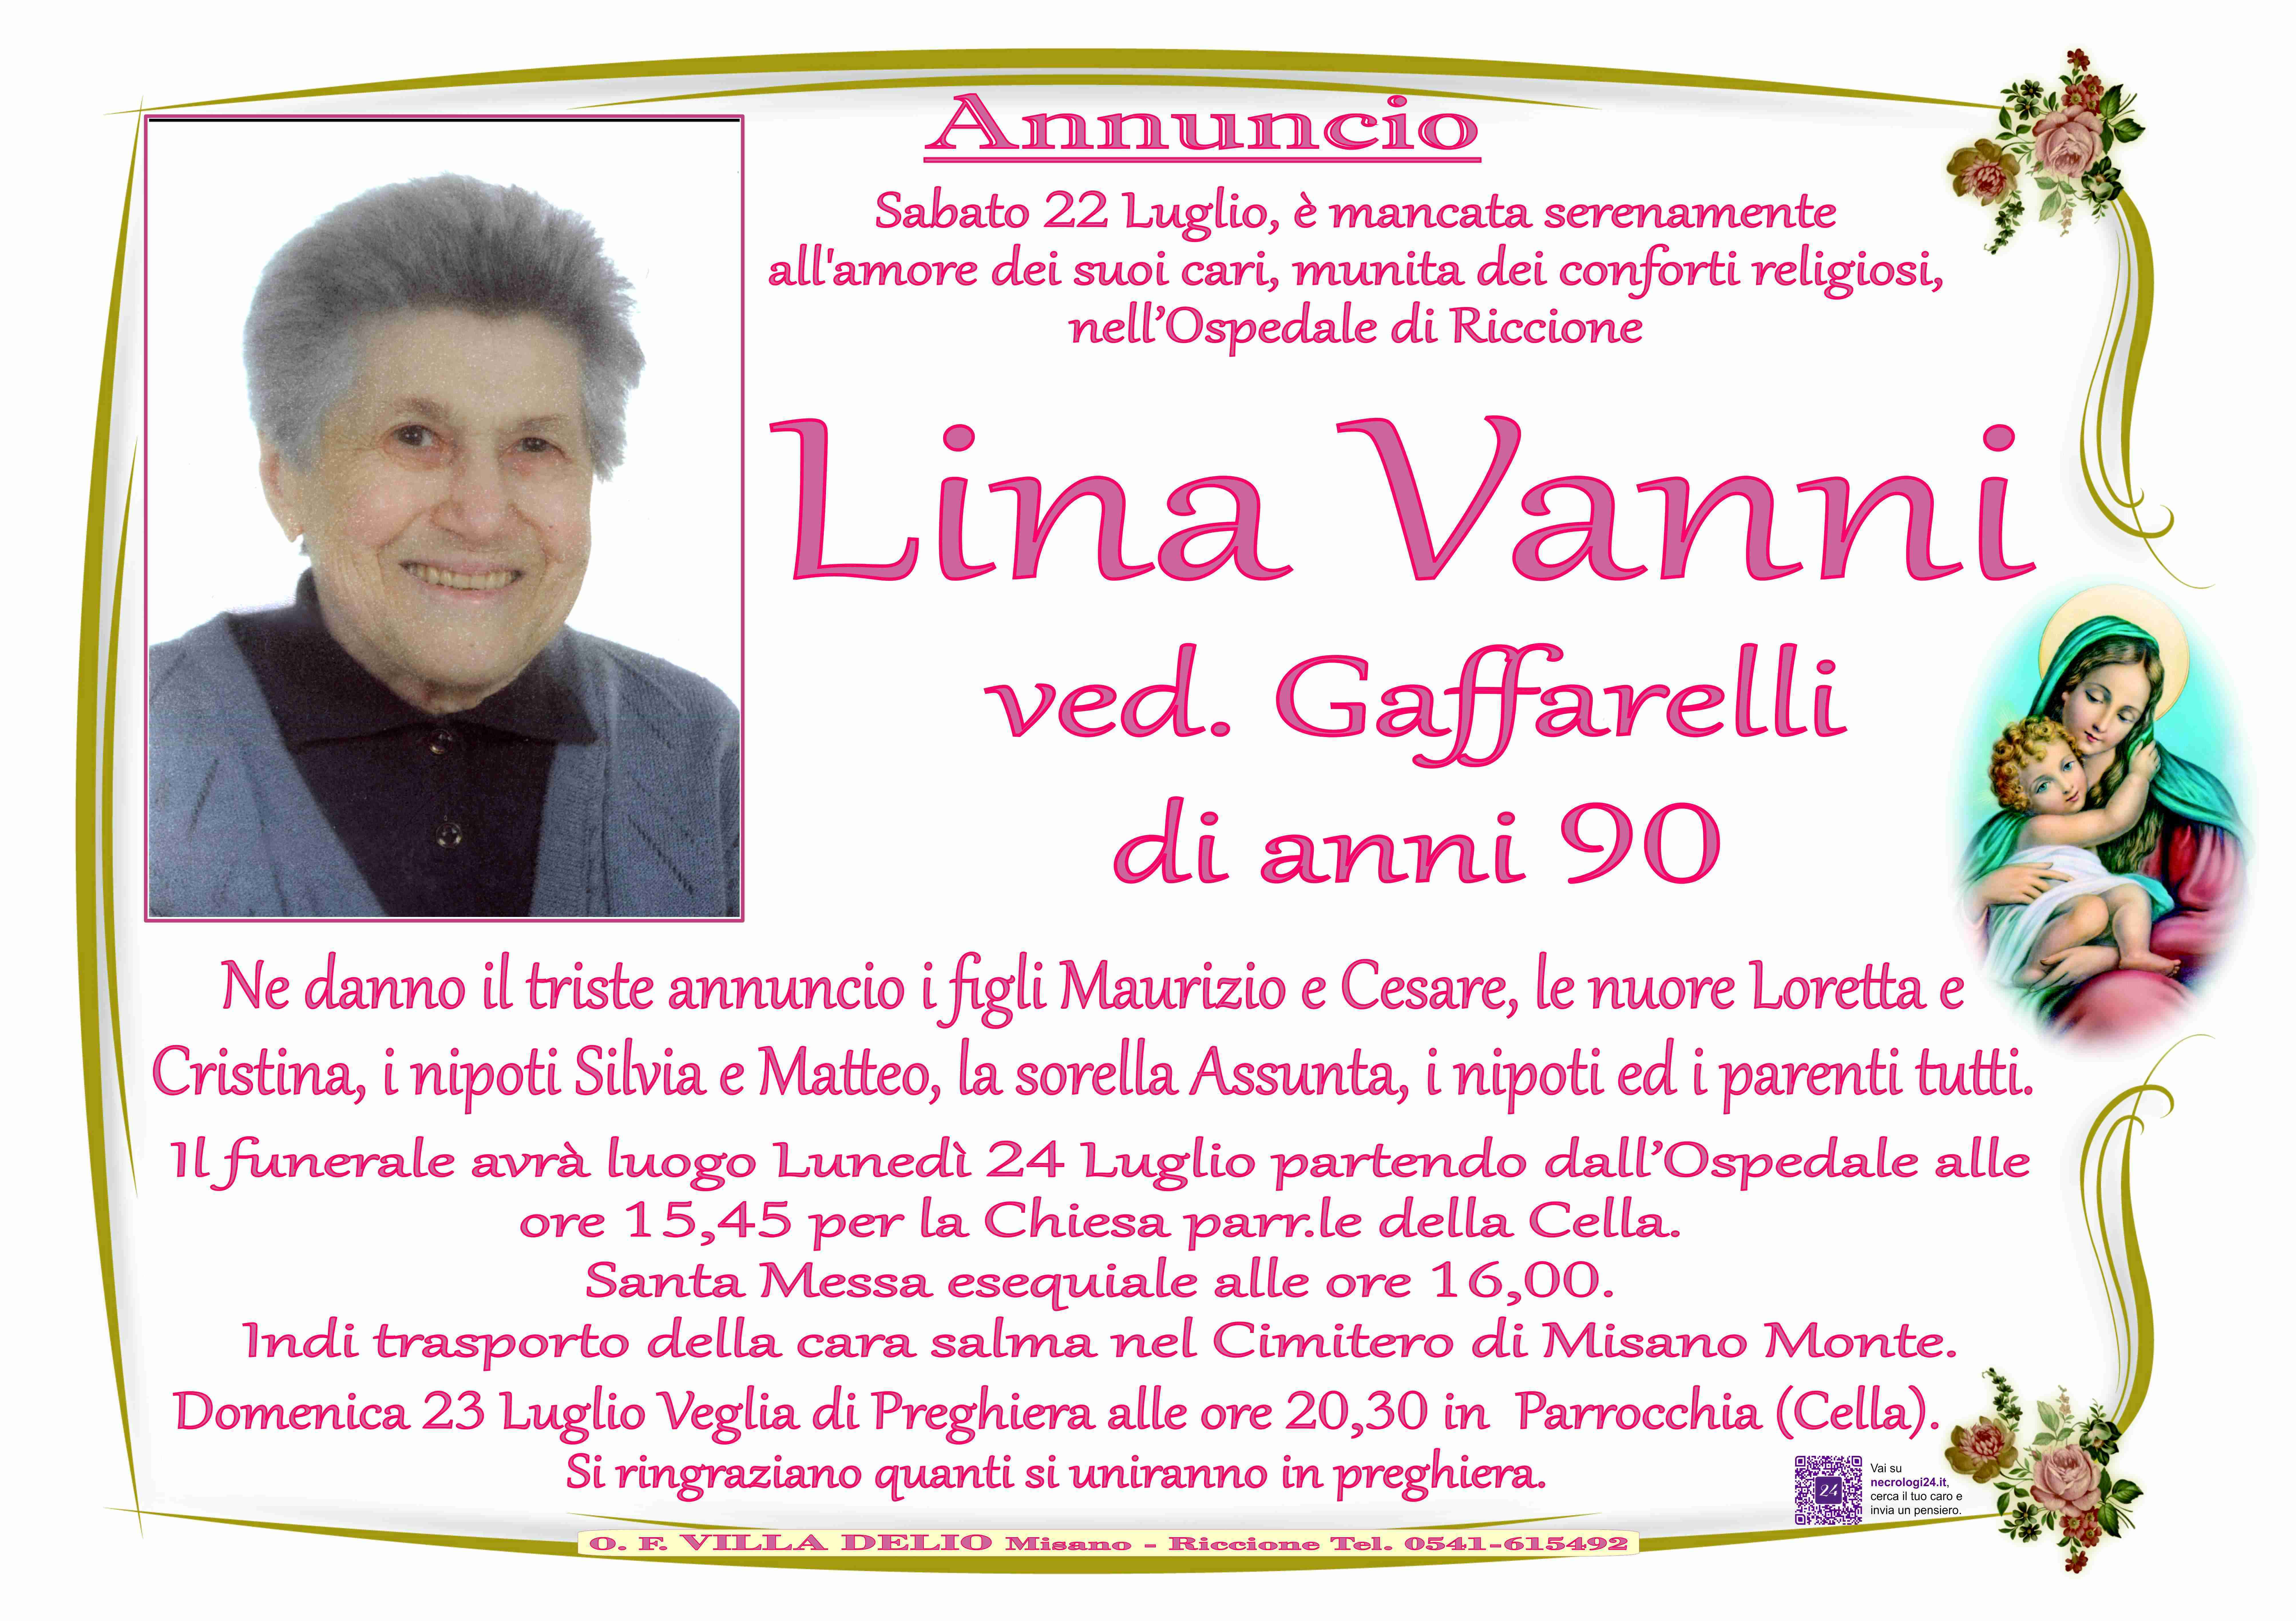 Lina Vanni